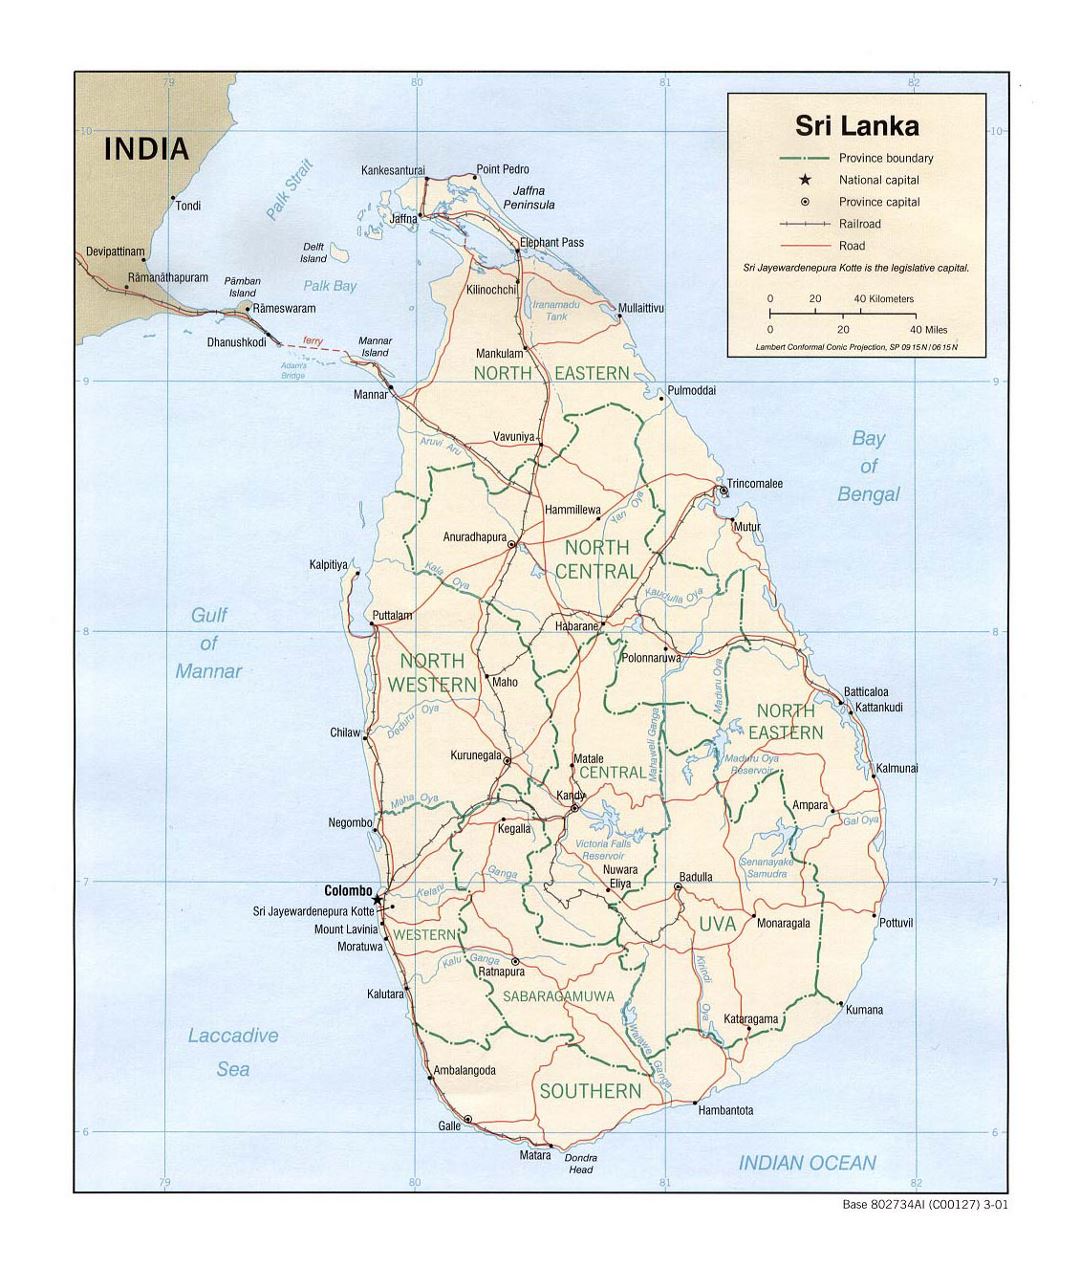 Detallado mapa político y administrativo de Sri Lanka con carreteras, ferrocarriles y principales ciudades - 2001